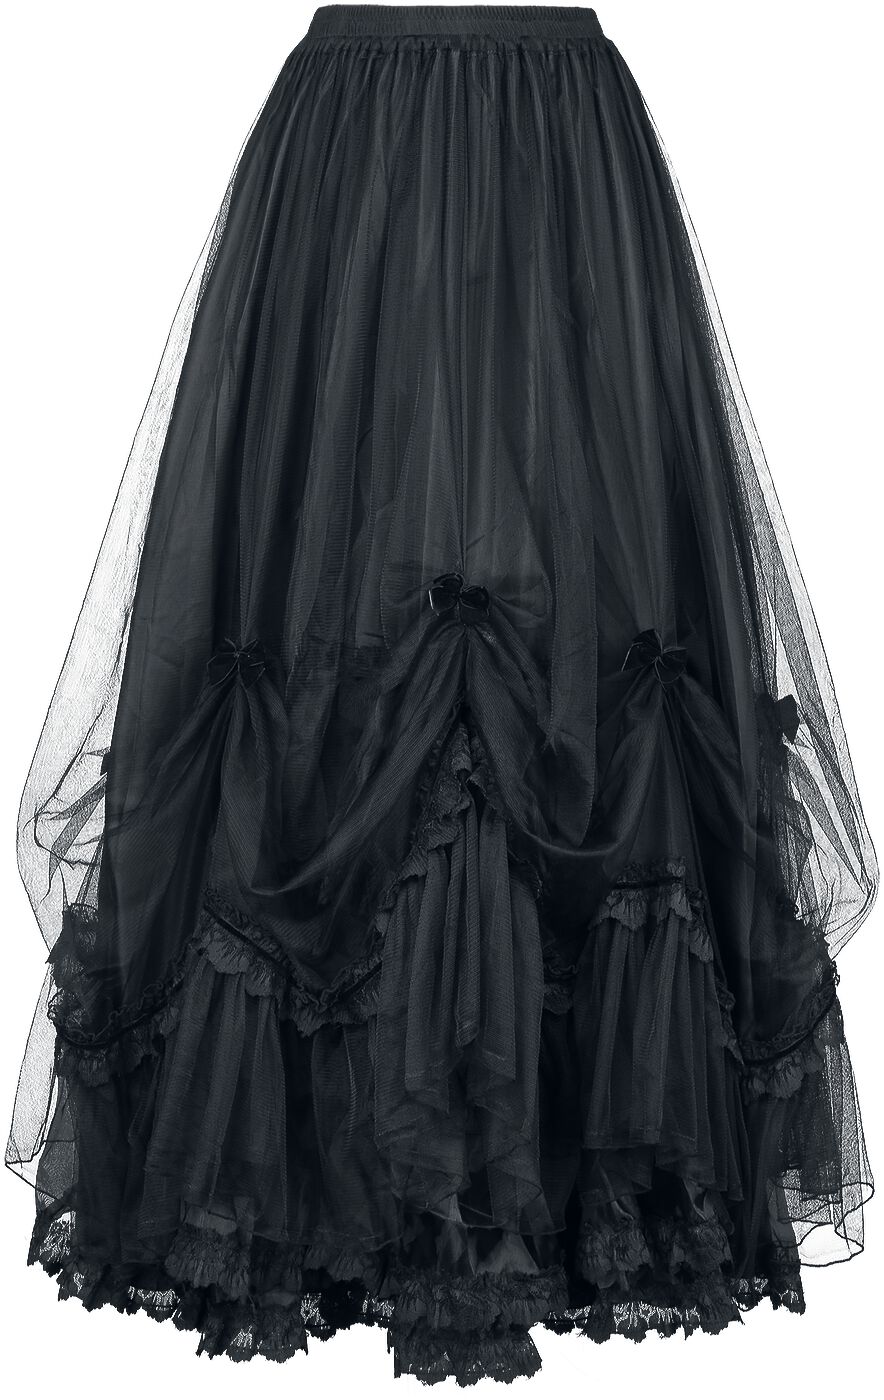 Sinister Gothic - Mittelalter Langer Rock - Gothic Skirt - S bis XXL - für Damen - Größe M - schwarz